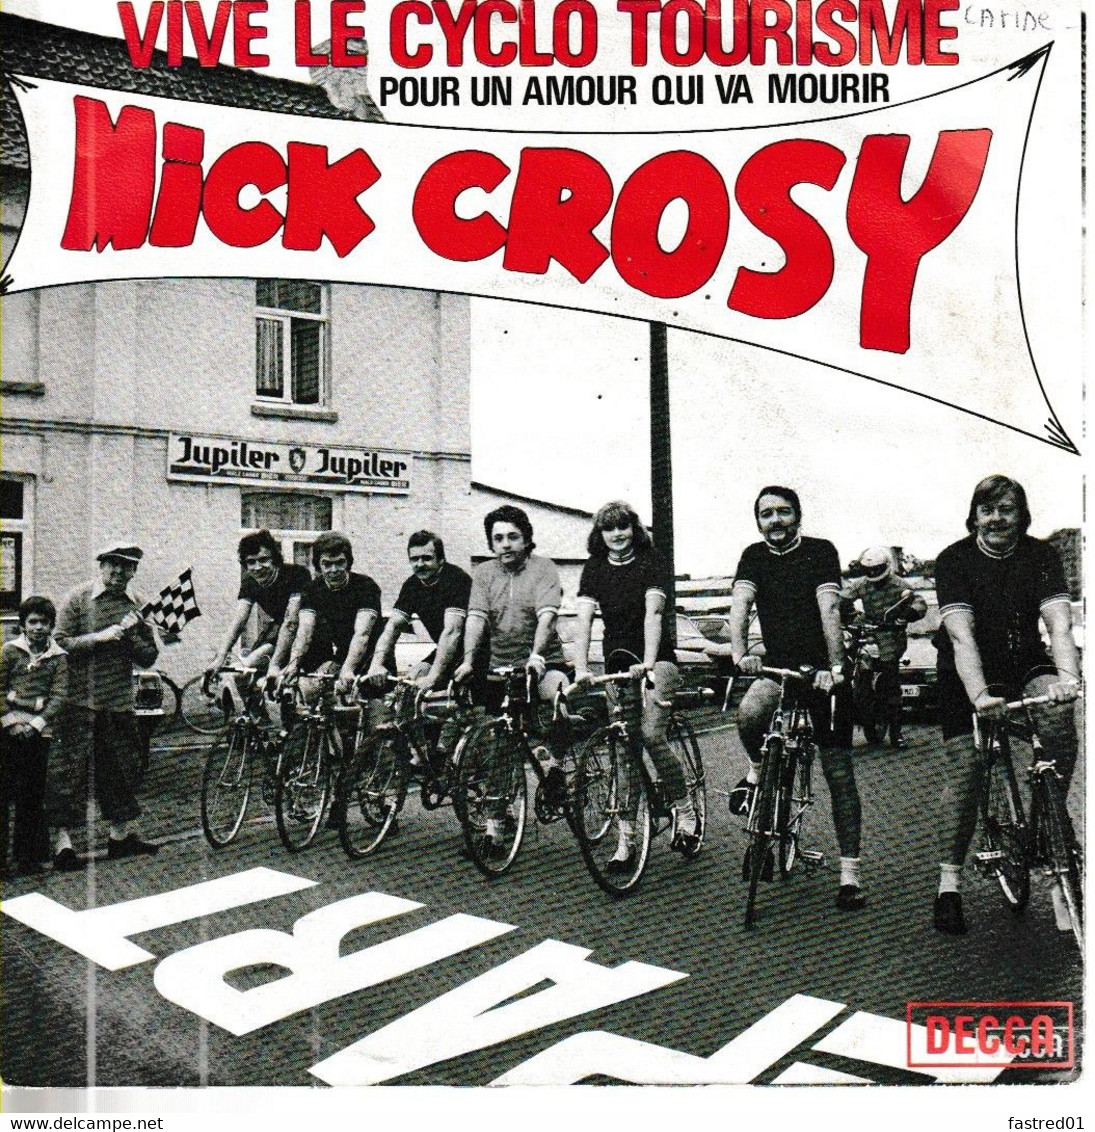 Vinyle SP 45t  7". MICK CROSY.  Vive Le Cyclo Tourisme / Pour Un Amour Qui Va Mourir. Date:1977.  N°18.183. état: EXC - Humour, Cabaret